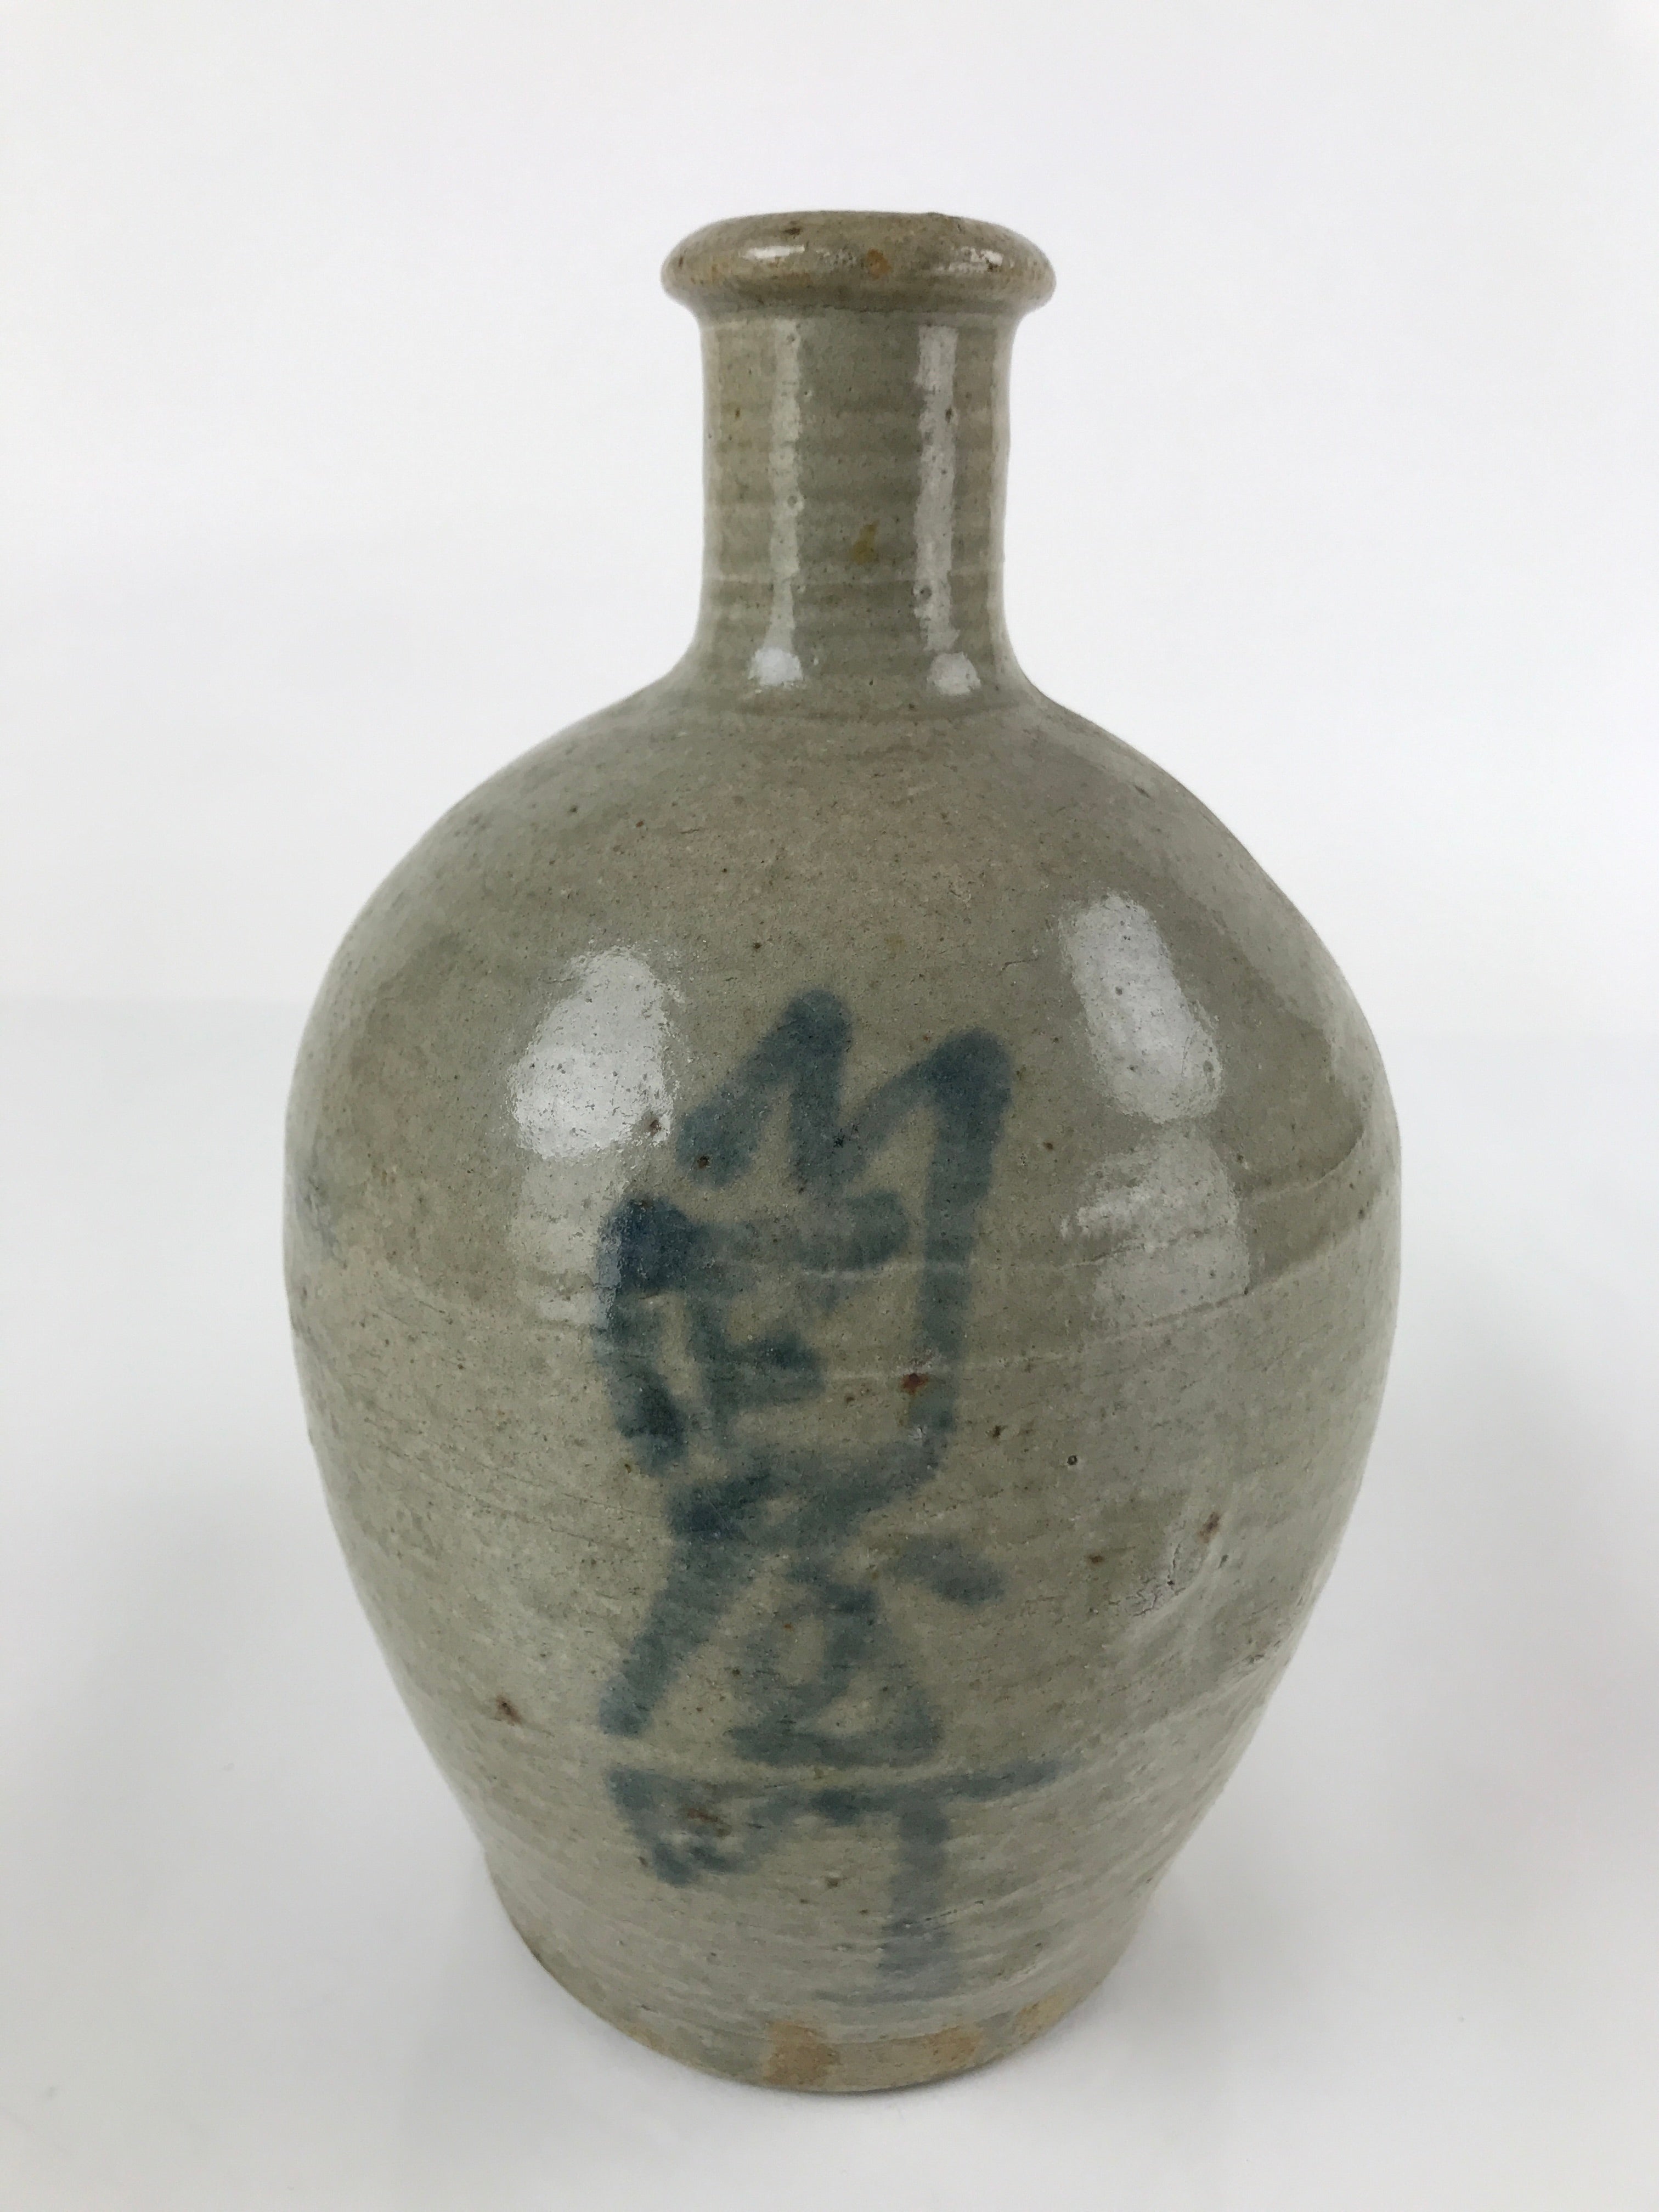 Antique C1880 Japanese Ceramic Sake Bottle Kayoi-Tokkuri Gray Blue Kanji TS629